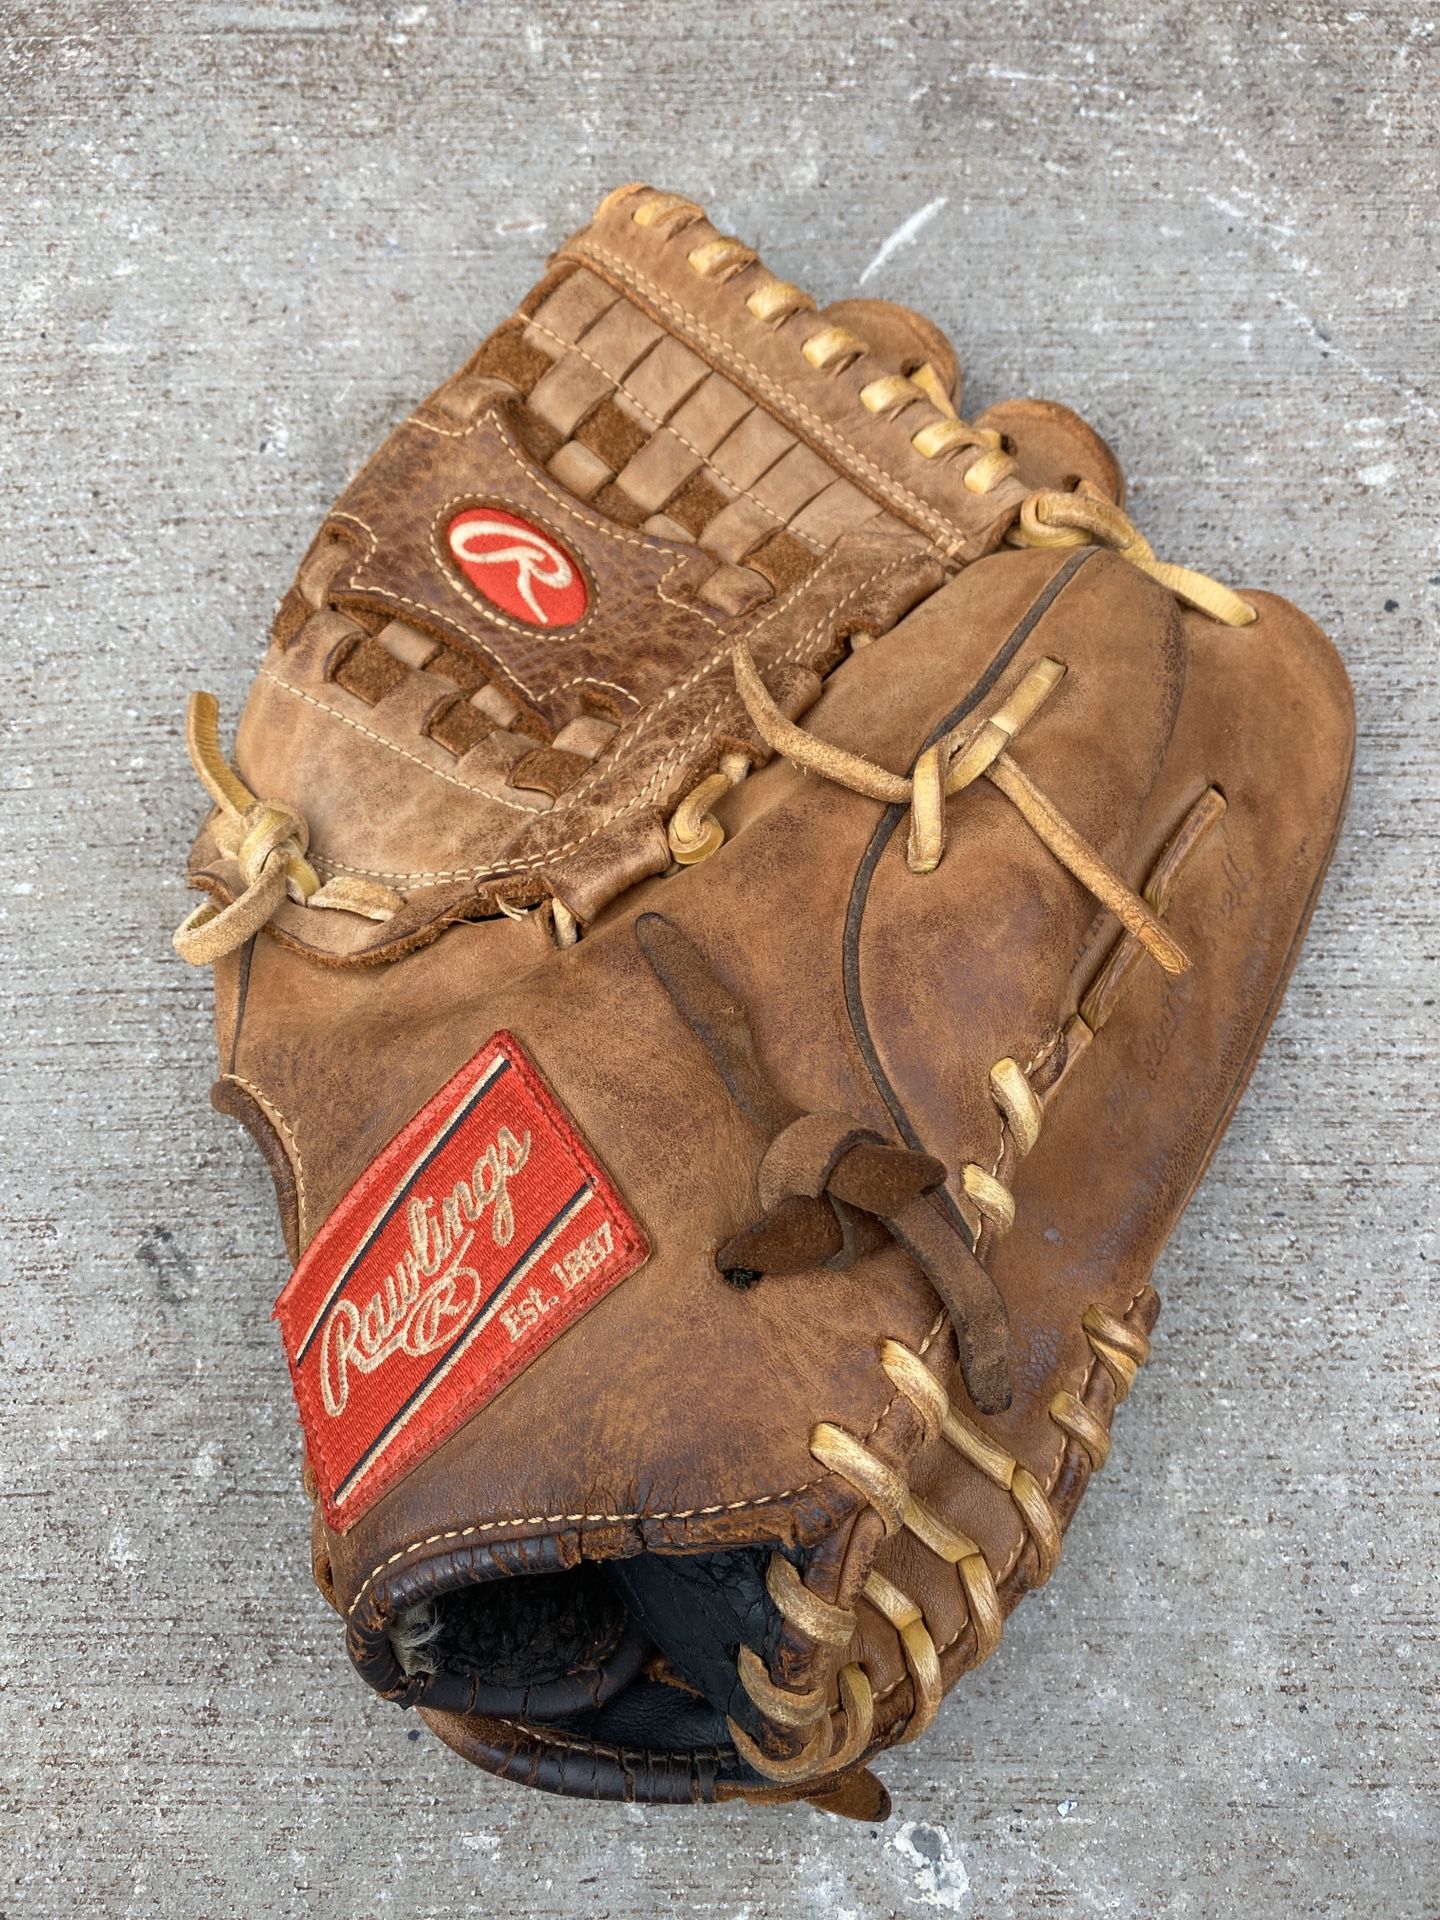 Rawlings 12.5” baseball glove